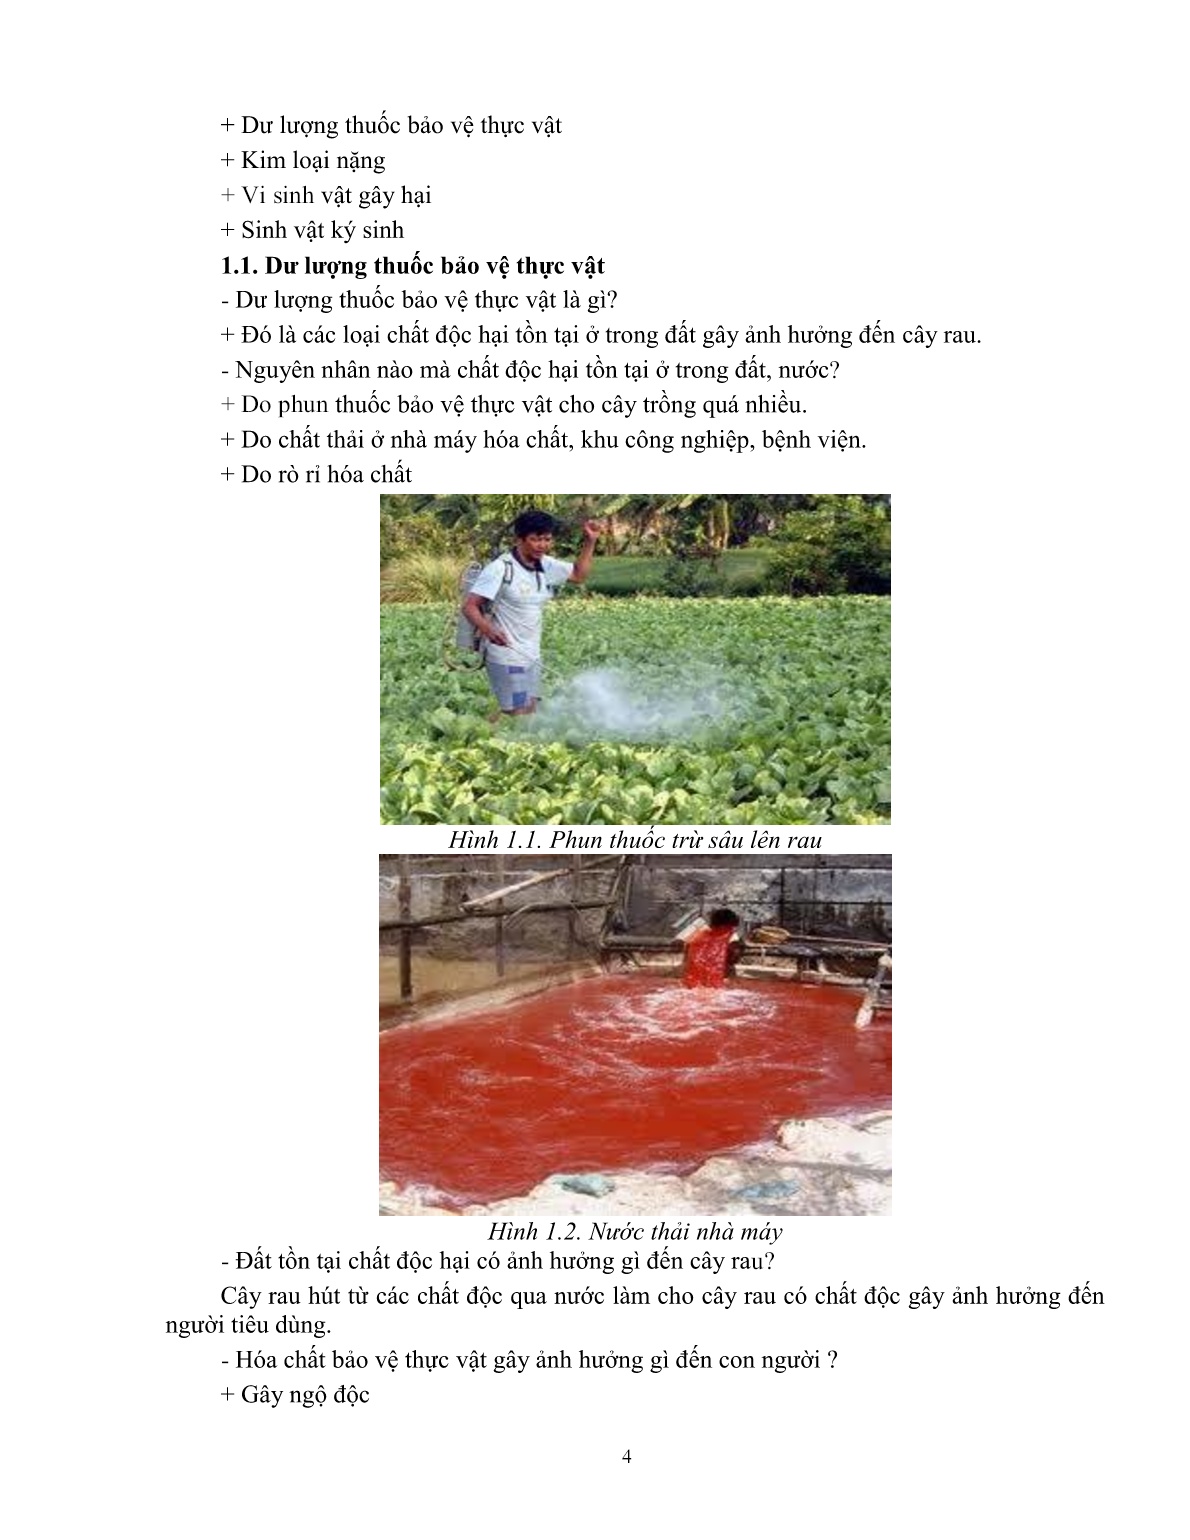 Giáo trình mô đun Hướng dẫn sản xuất rau an toàn theo hướng Vietgap (Trình độ: Đào tạo dưới 03 tháng) trang 5